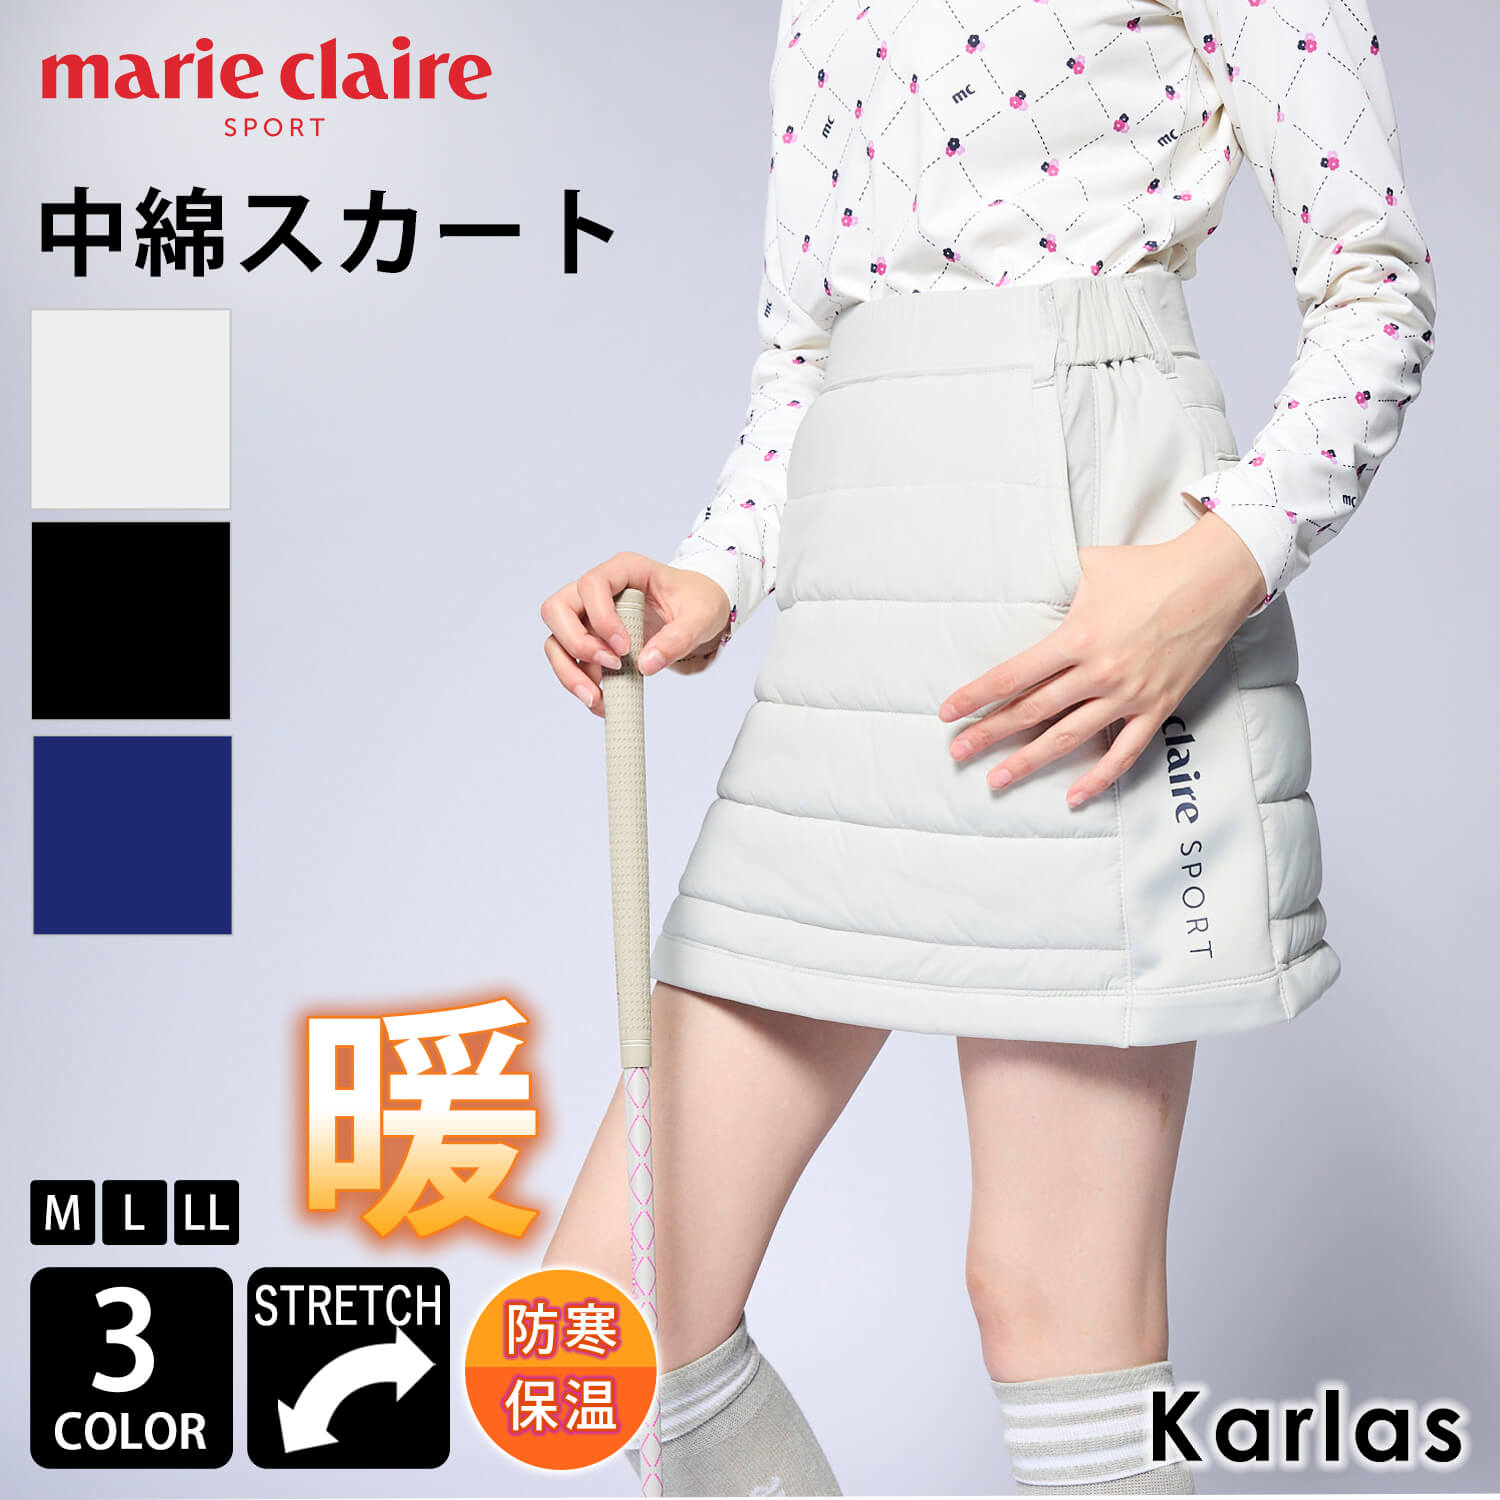 【在庫処分】 marie claire GOLF マリクレール ゴルフウェア スカート レディース ミニスカート 中綿...